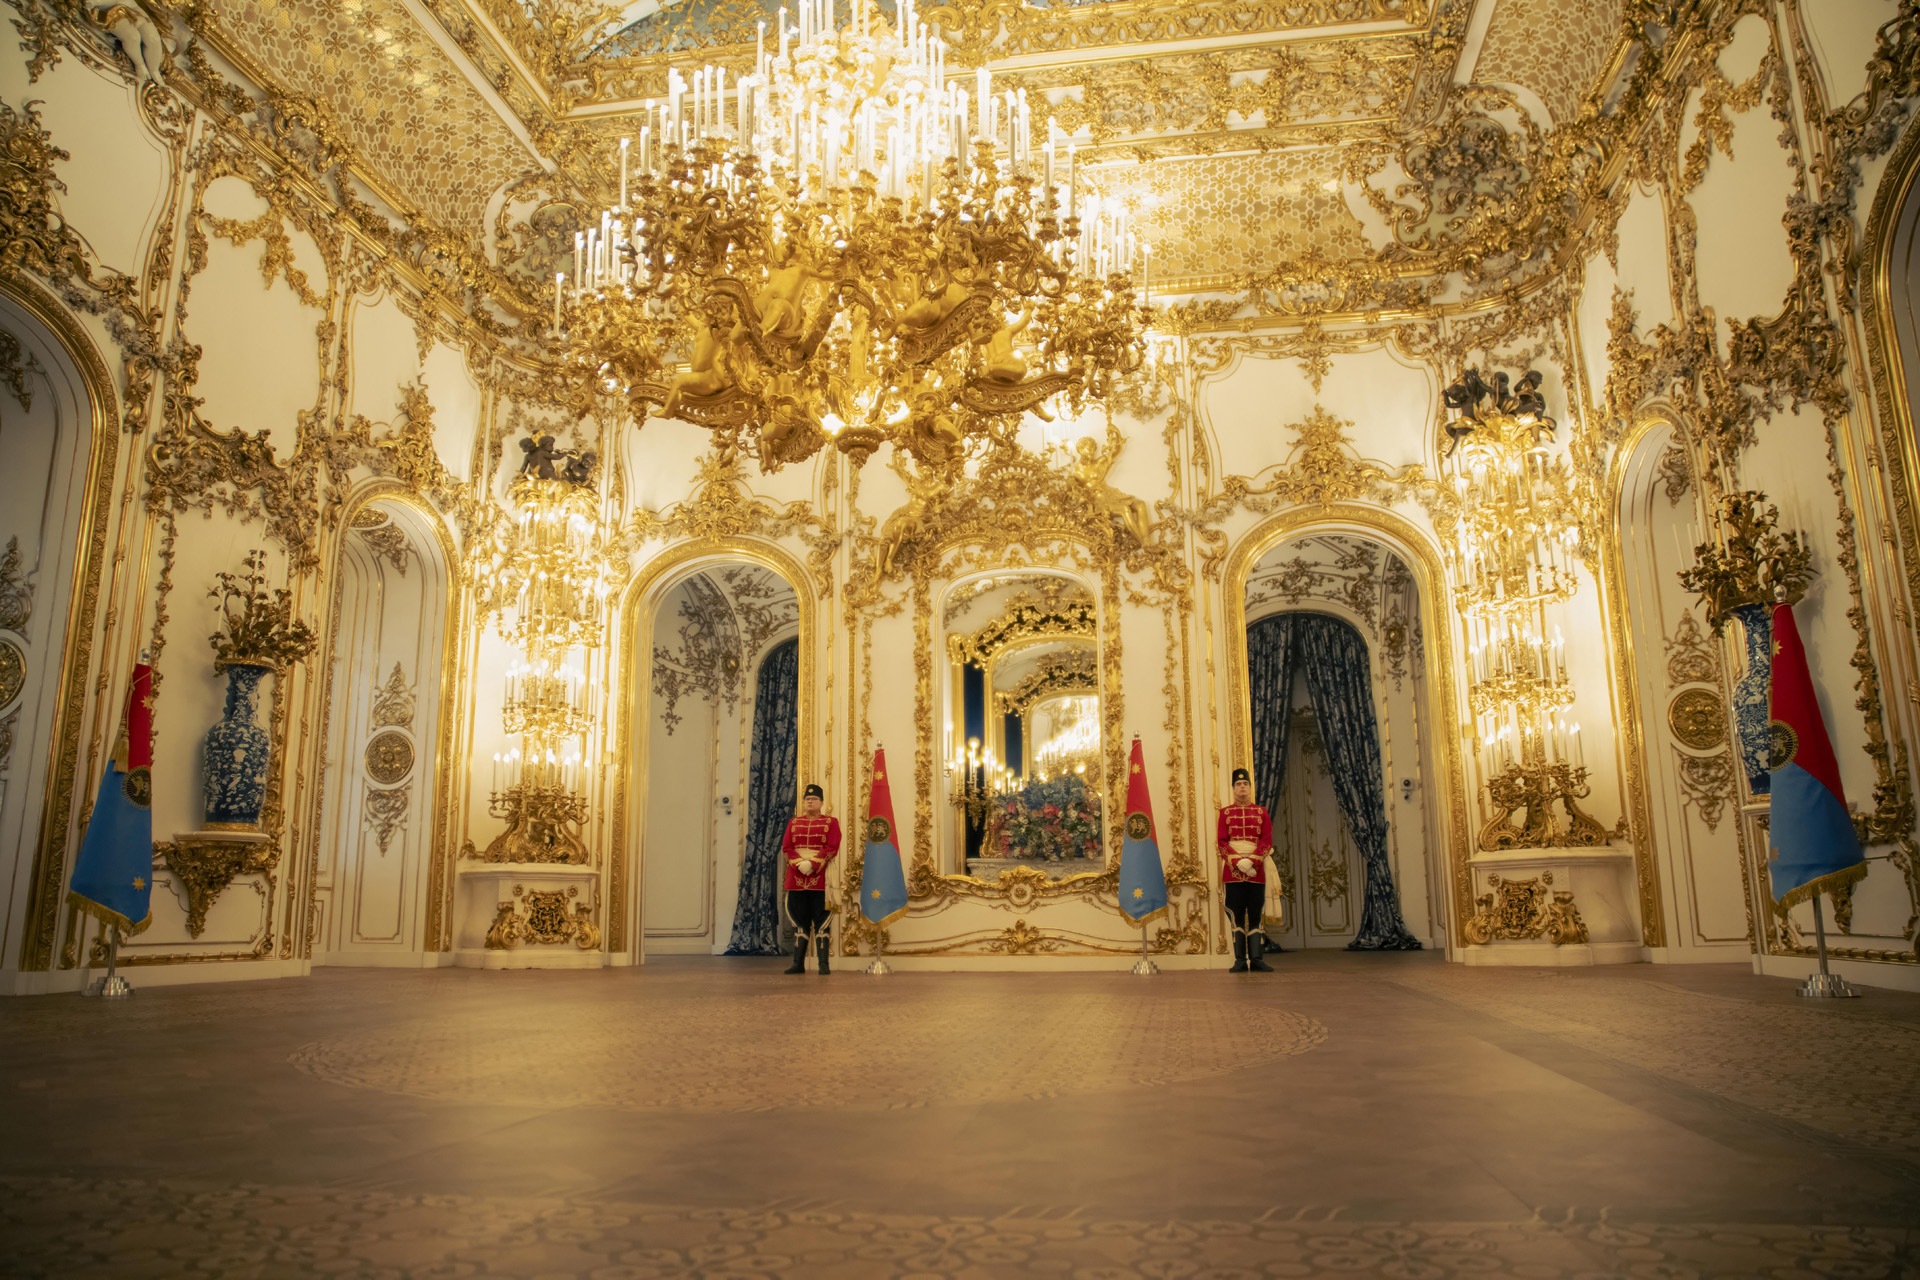 The interior of Palais Liechtenstein, Vienna, as seen in The Regime